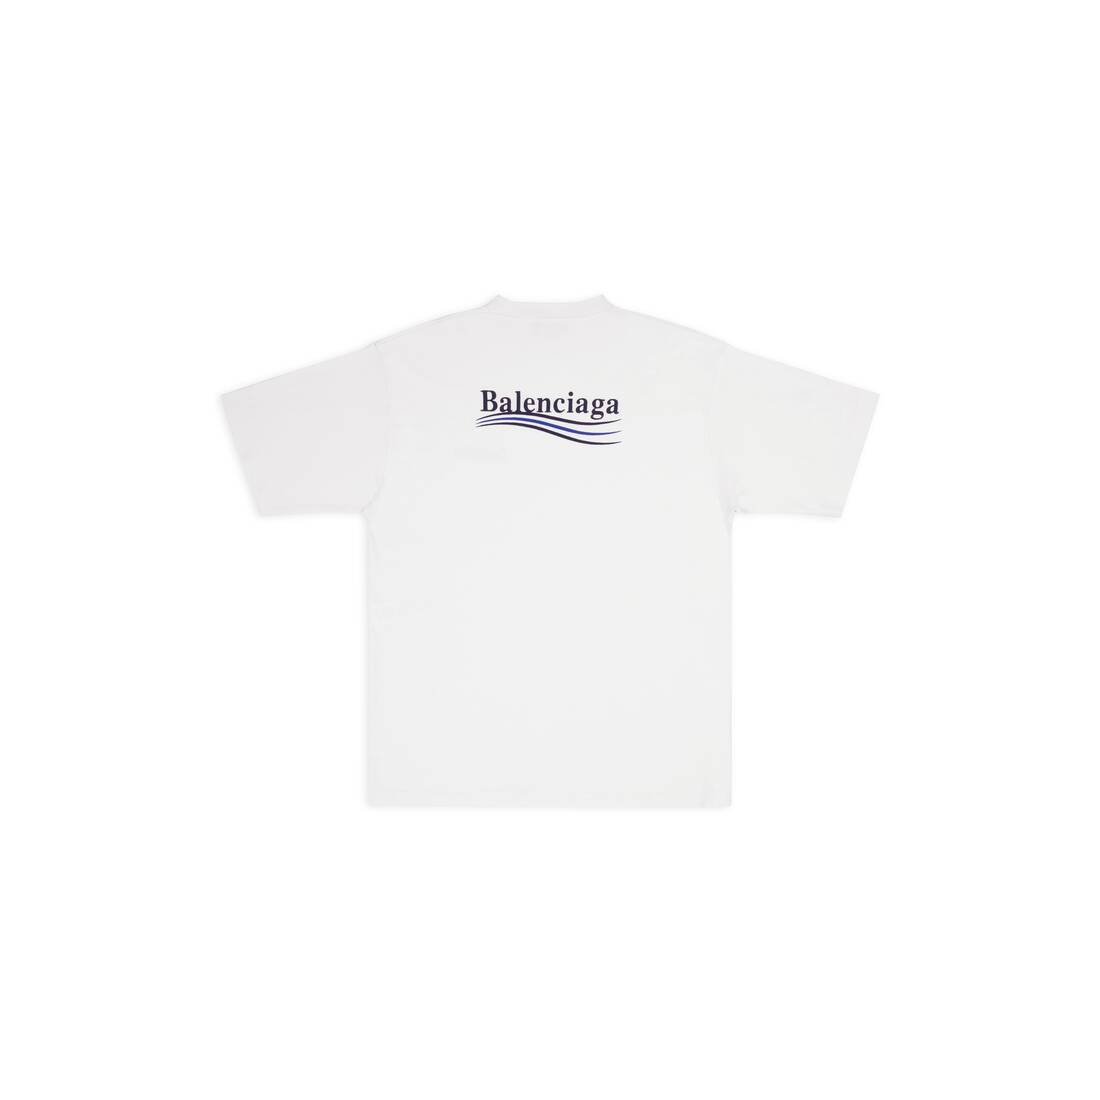 balenciagaバレンシアガPOLITICAL CAMPAIGN Tシャツ Tシャツ/カットソー(半袖/袖なし) 在庫あり 即納